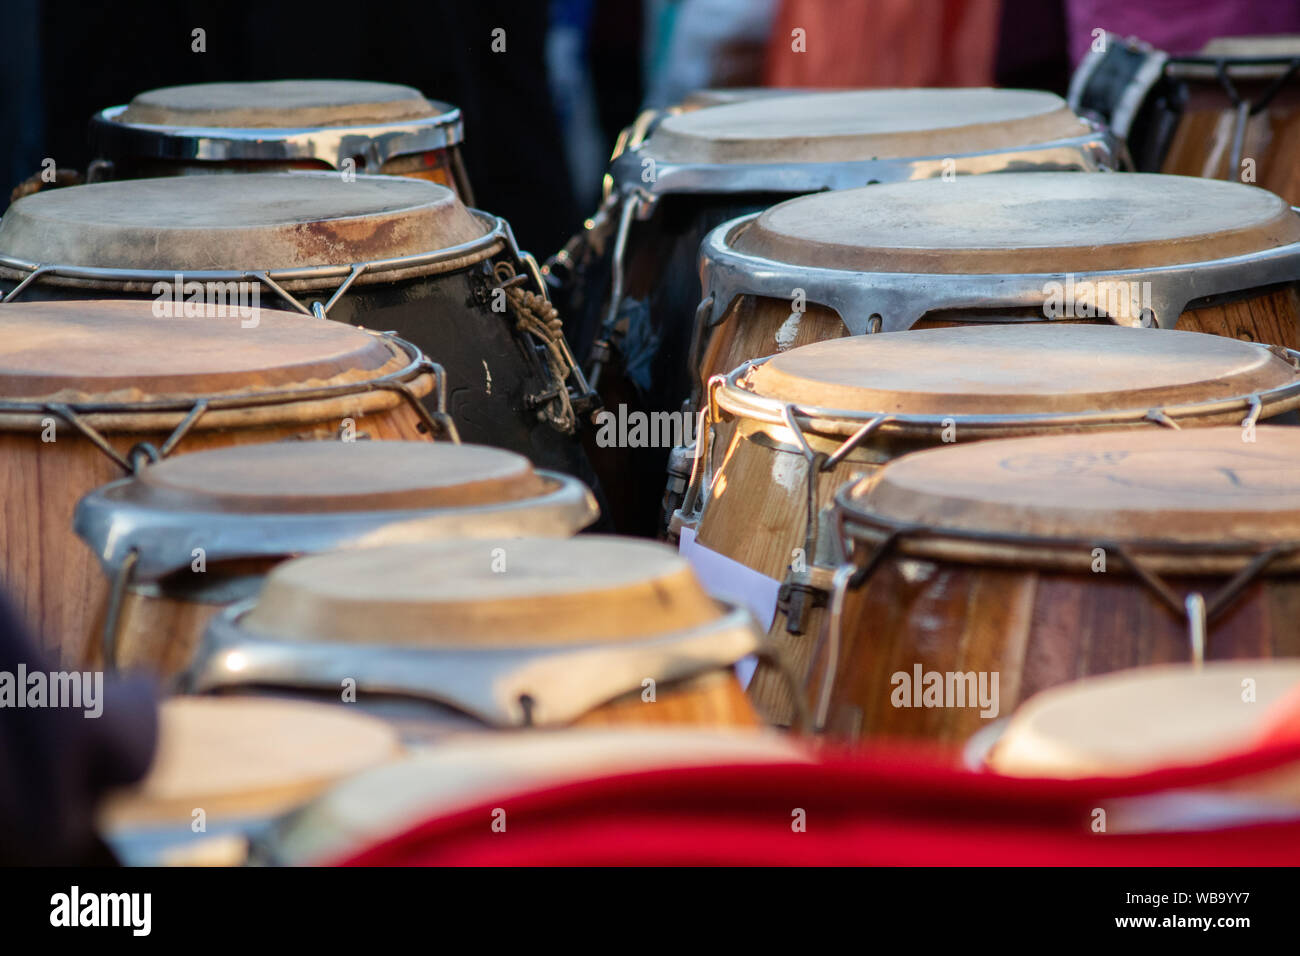 Tambores reposando para tocar candombe Stock Photo